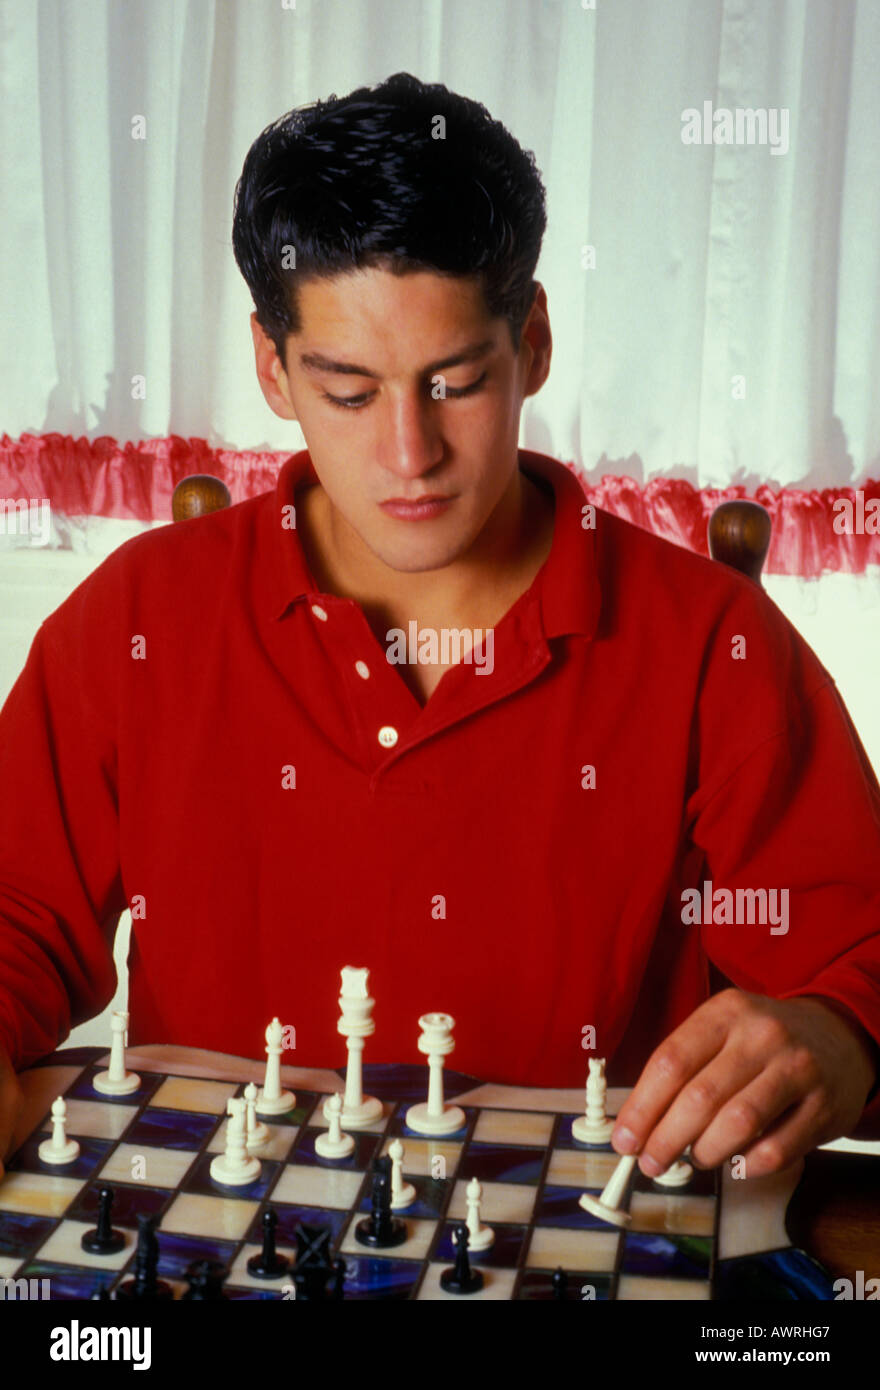 Mexican-garçon américain, mexicain-américain, jeune garçon, garçon, jouant aux échecs, joueur d'échecs, jeu d'échecs, à la maison, à San Francisco, Californie Banque D'Images